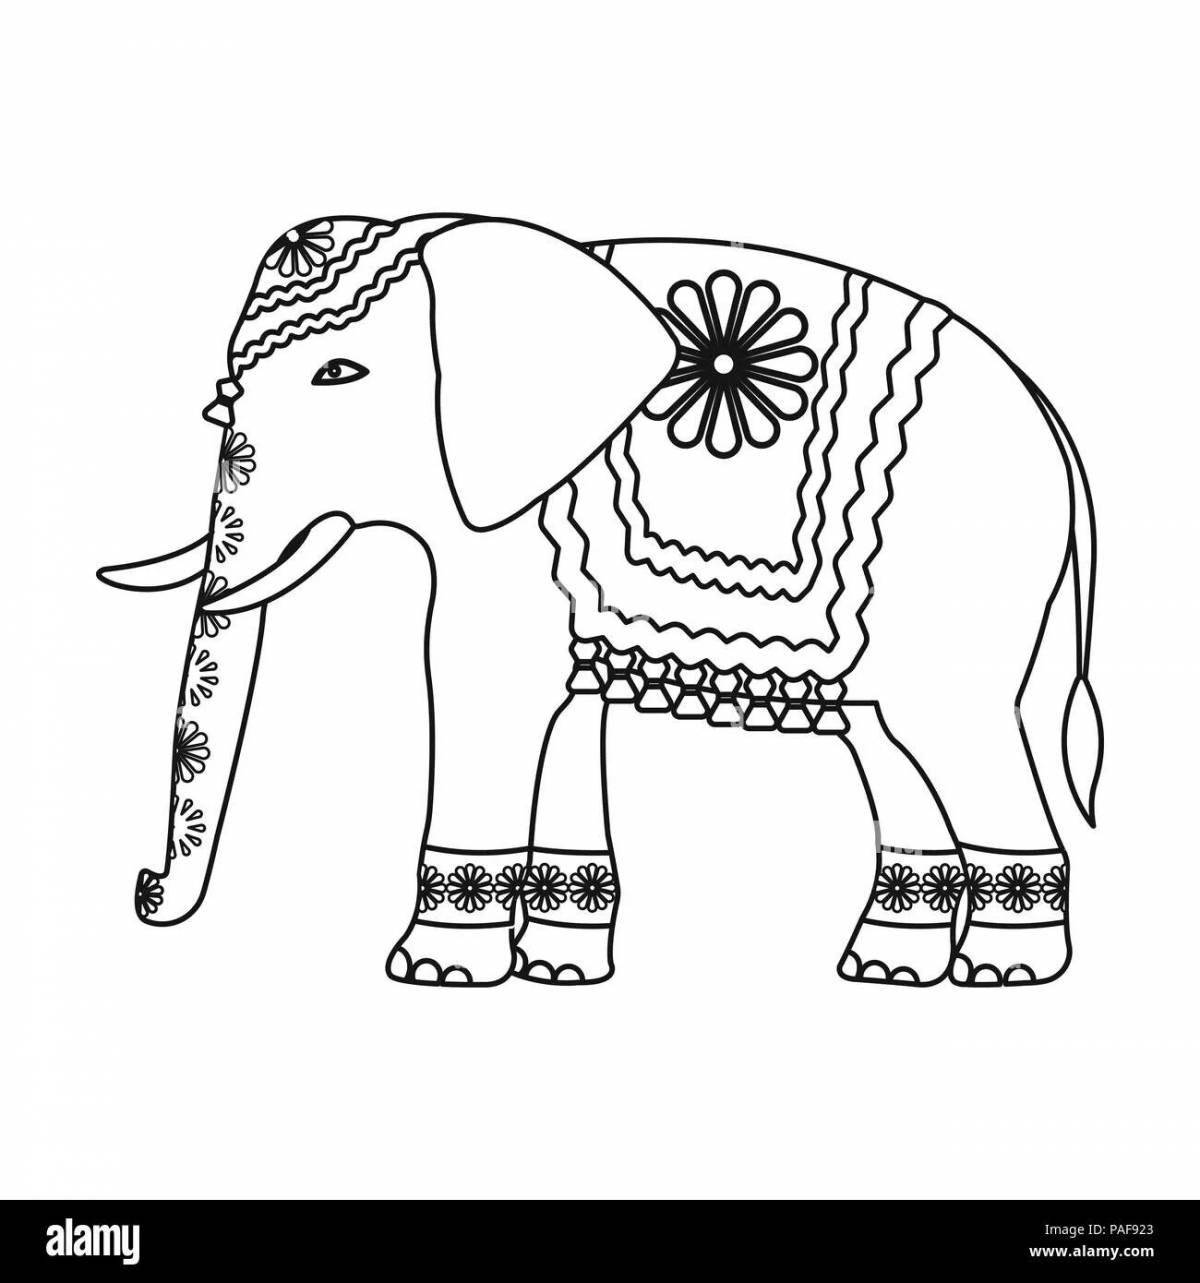 Веселая раскраска индийского слона для детей